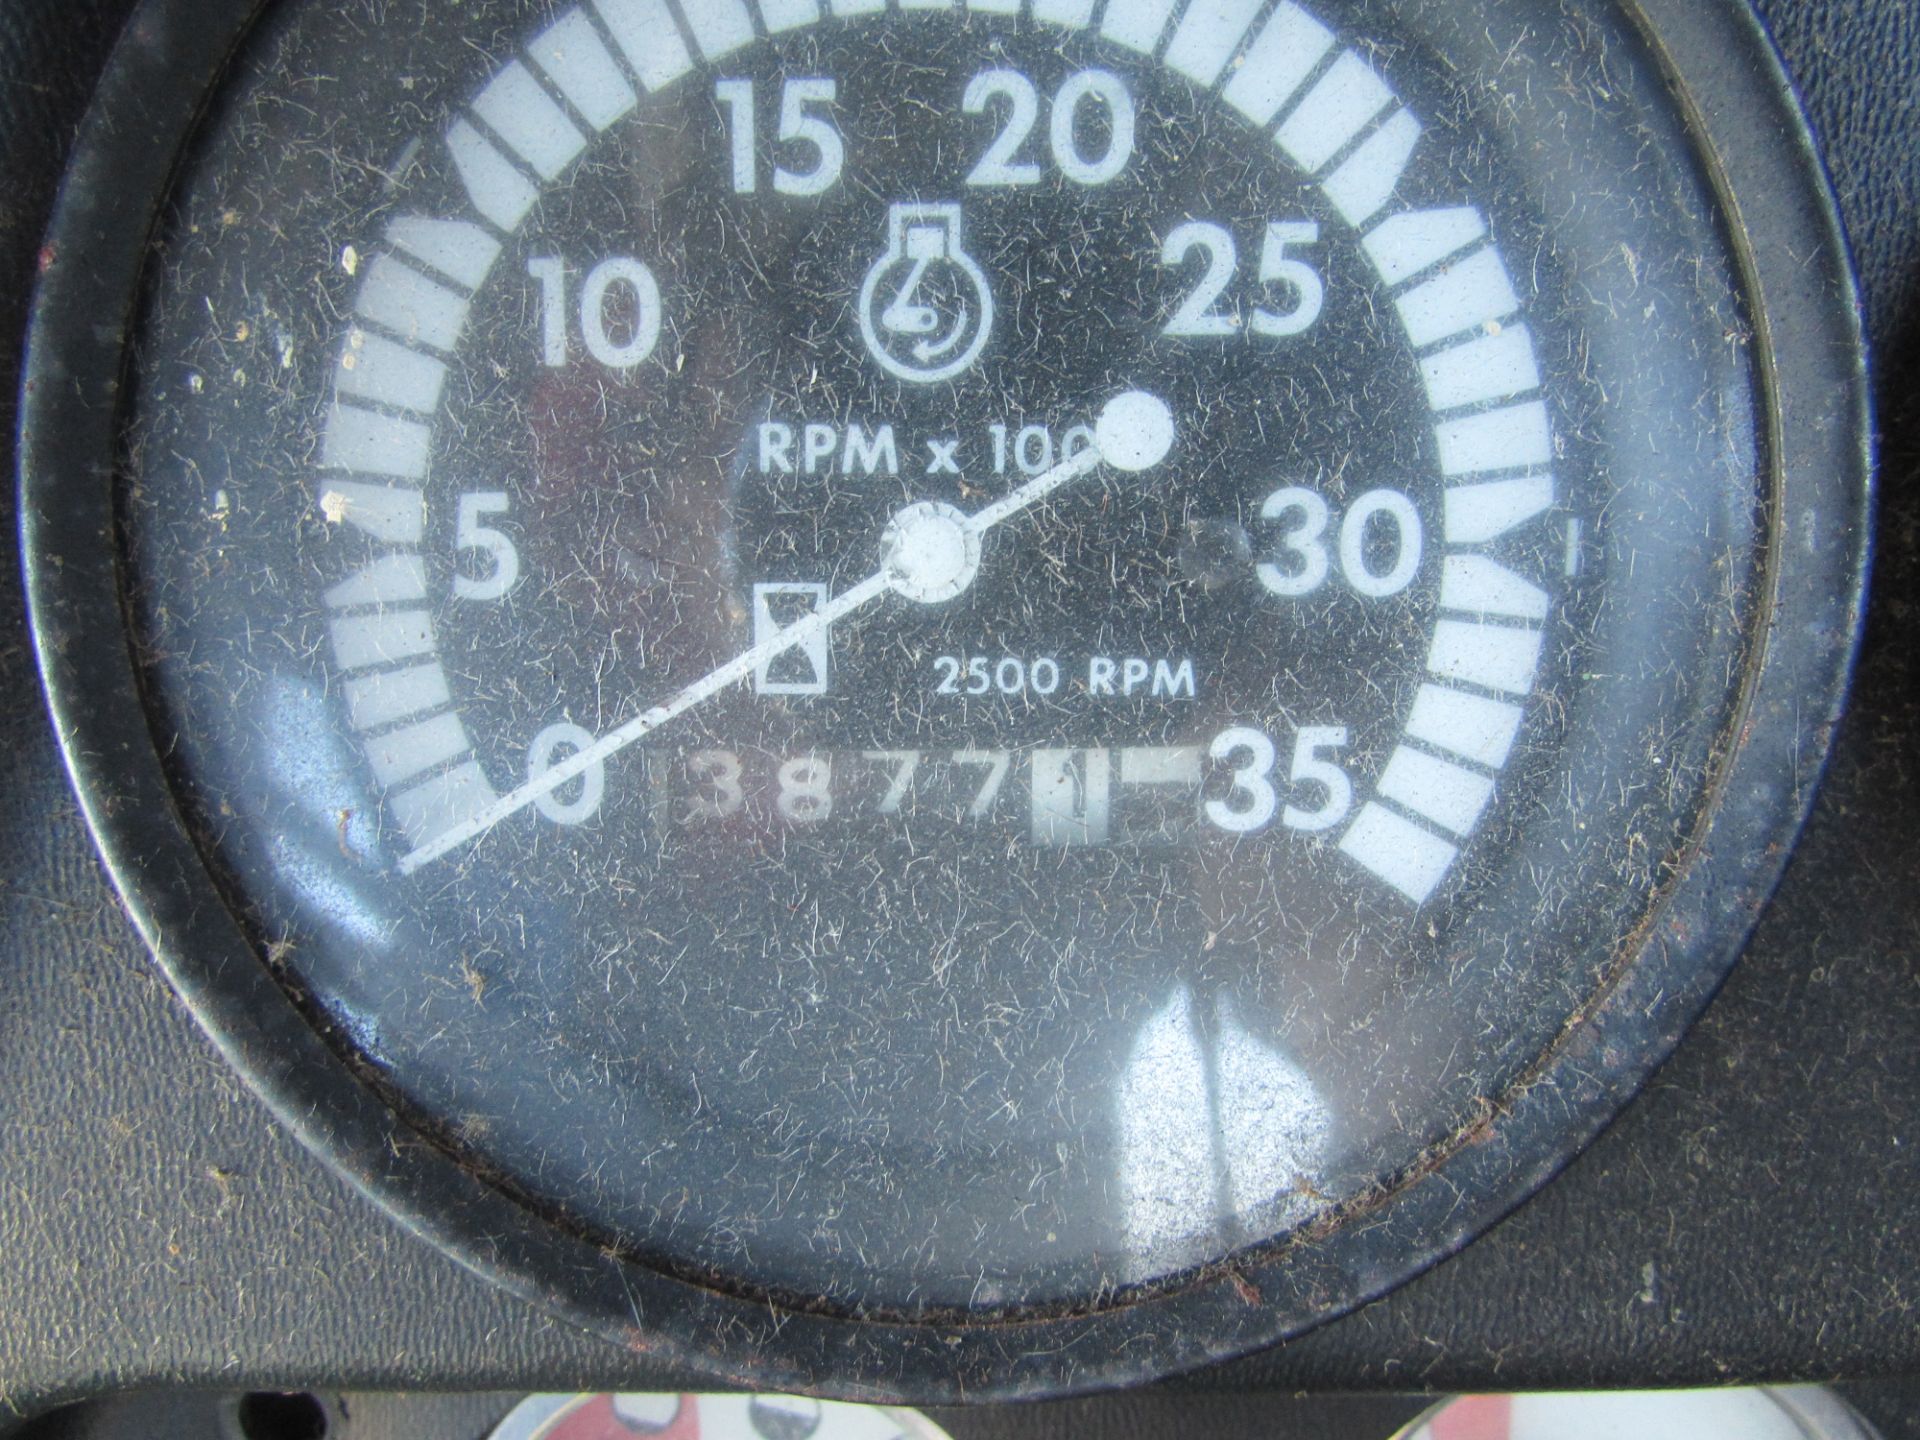 John Deere 4400 combine, Diesel, 3,877 hours, 23.1-26 front tires, 10.00-16 rear tires, SN-152154, - Image 5 of 5